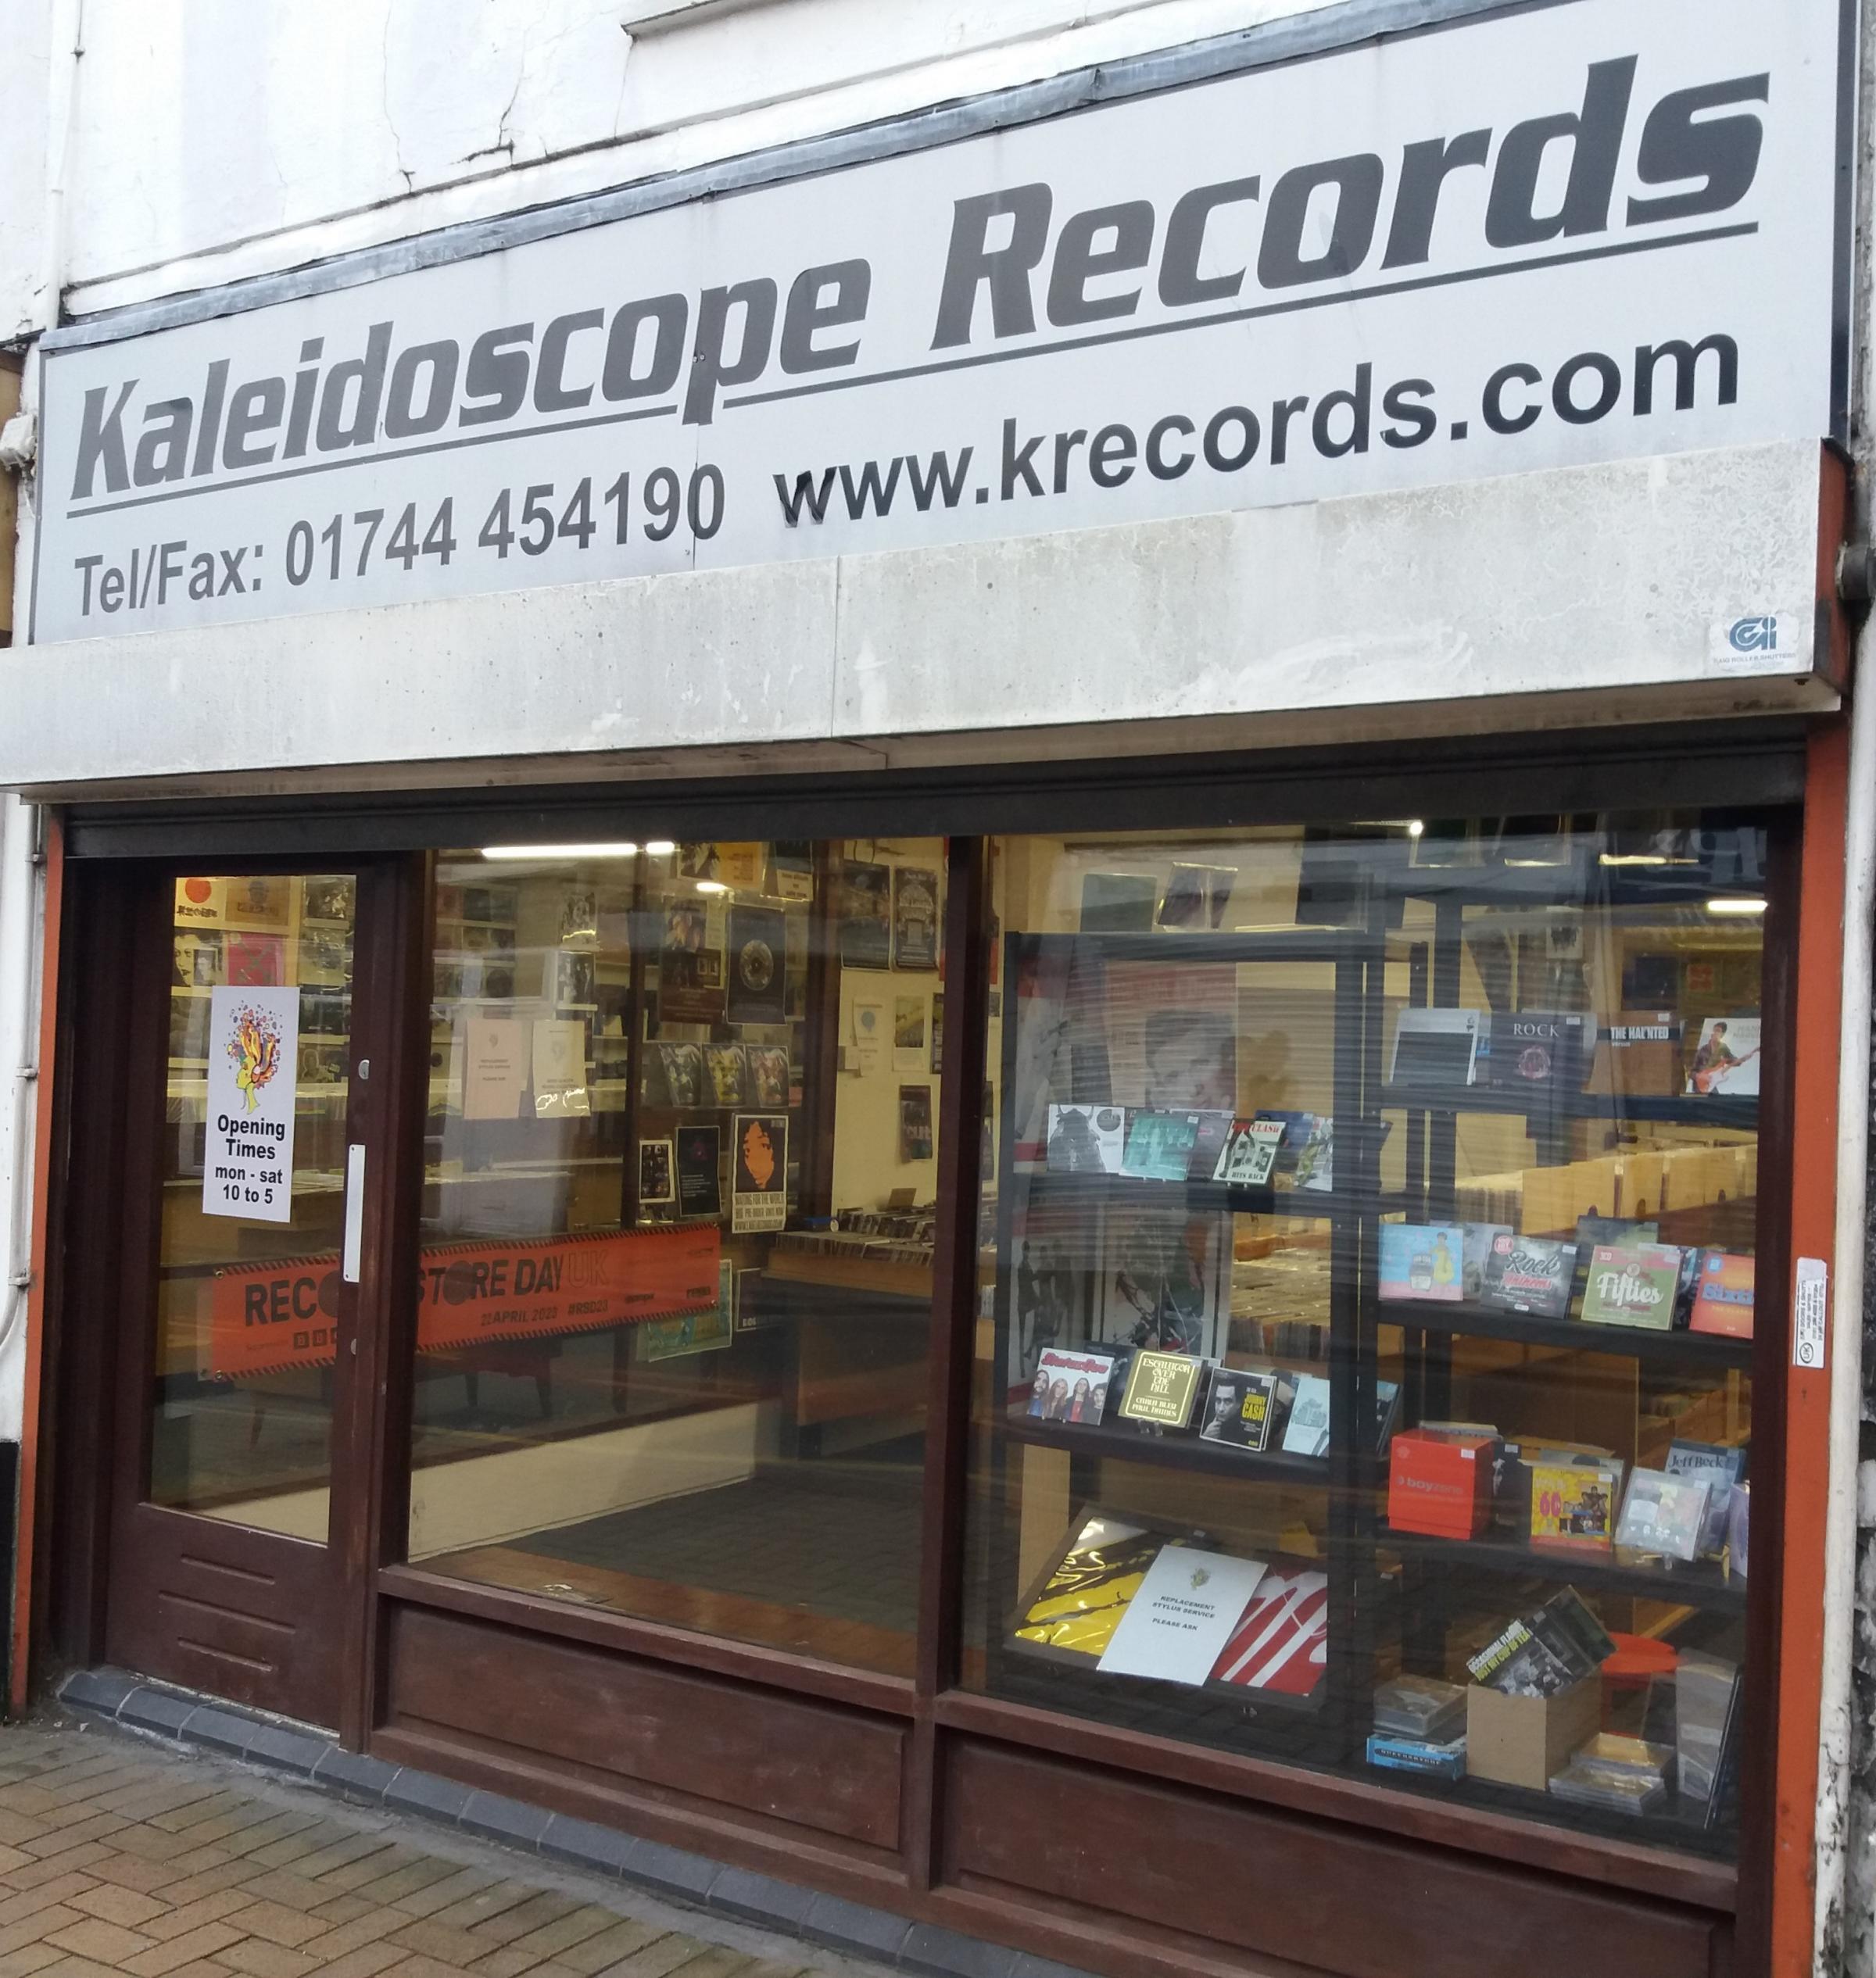 Kaleidoscope Records is on Westfield Street in St Helens